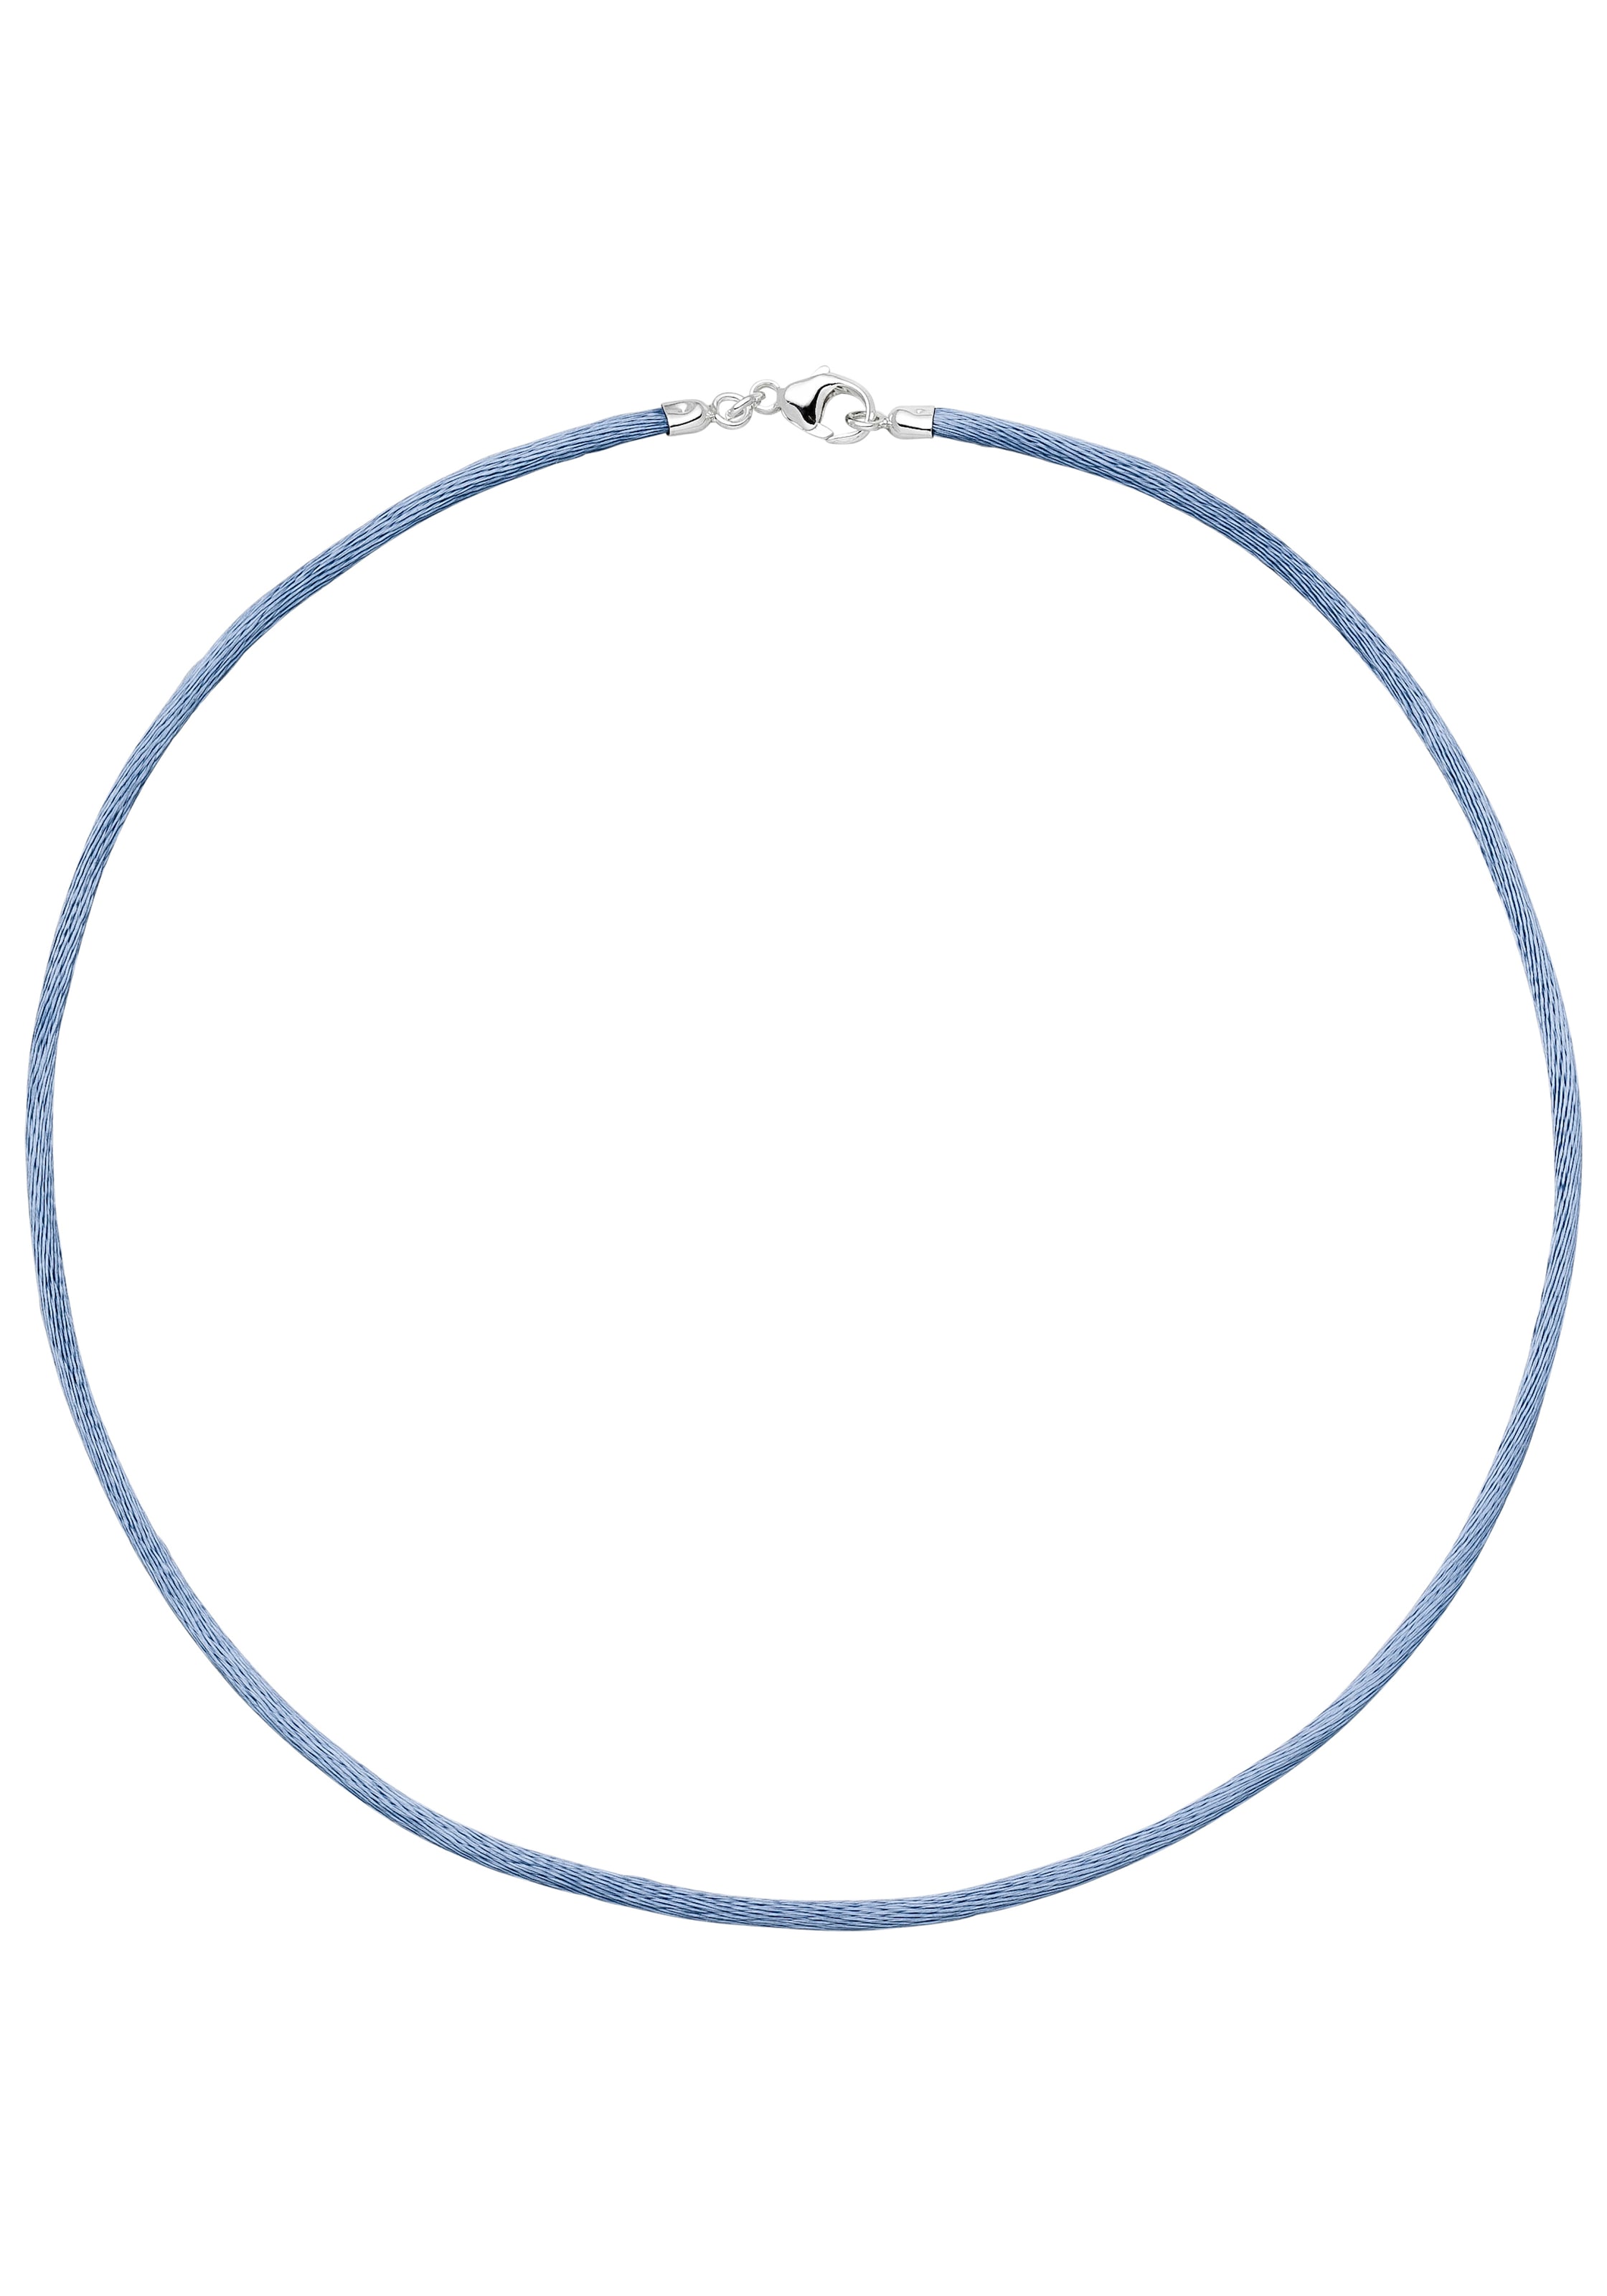 Kette ohne Anhänger, Seidenkette hellblau 42 cm 2,8 mm